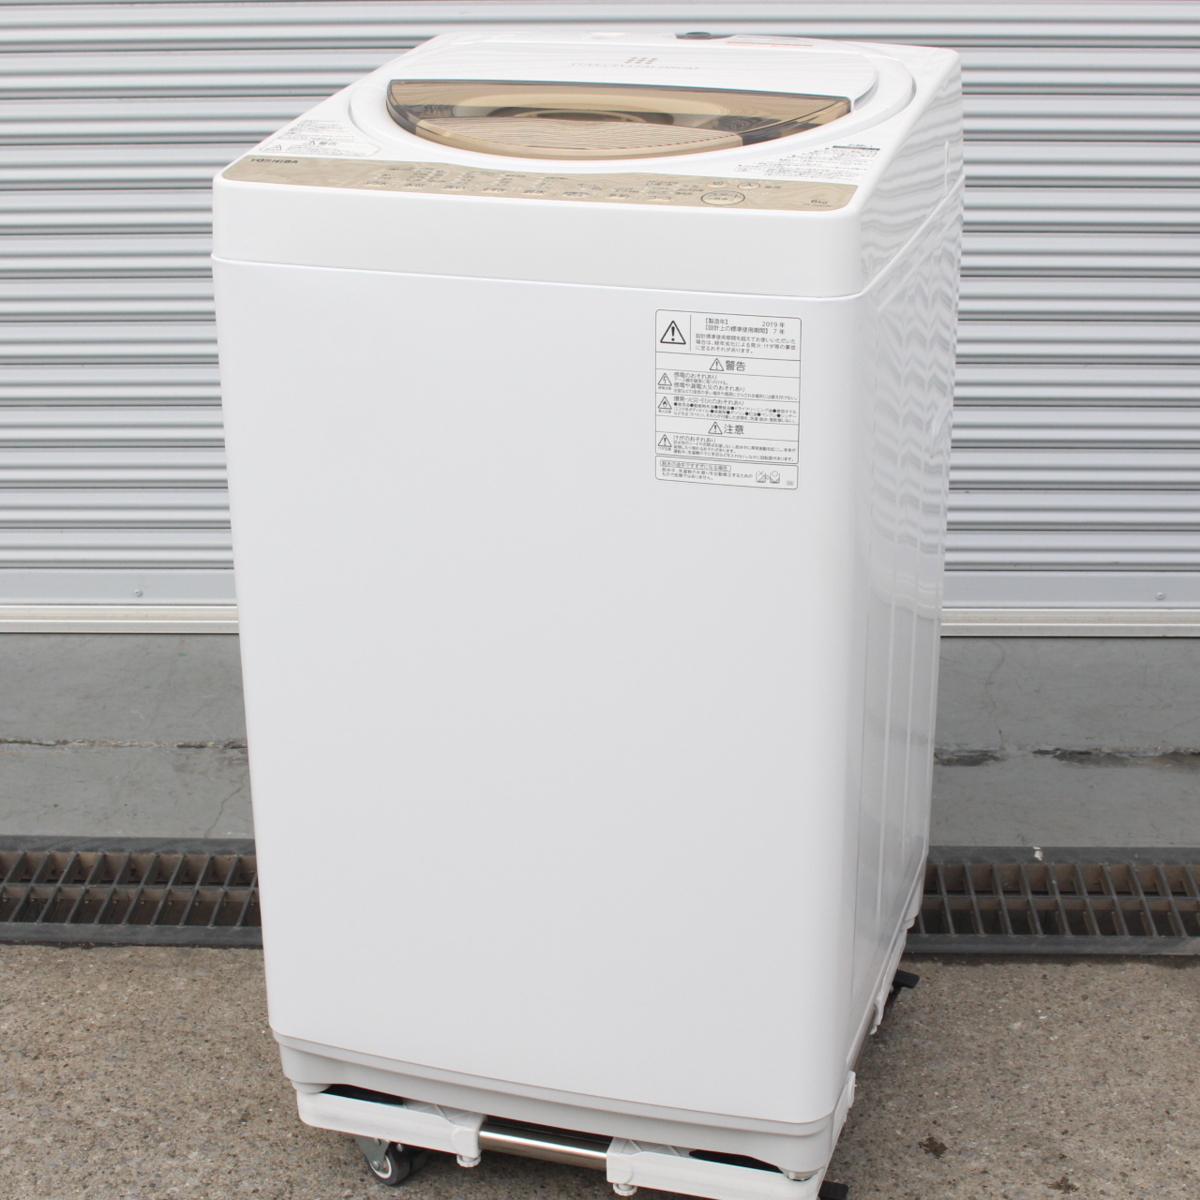 川崎市幸区にて 東芝 全自動洗濯機 AW-6G8 2019年製 を出張買取させて頂きました。